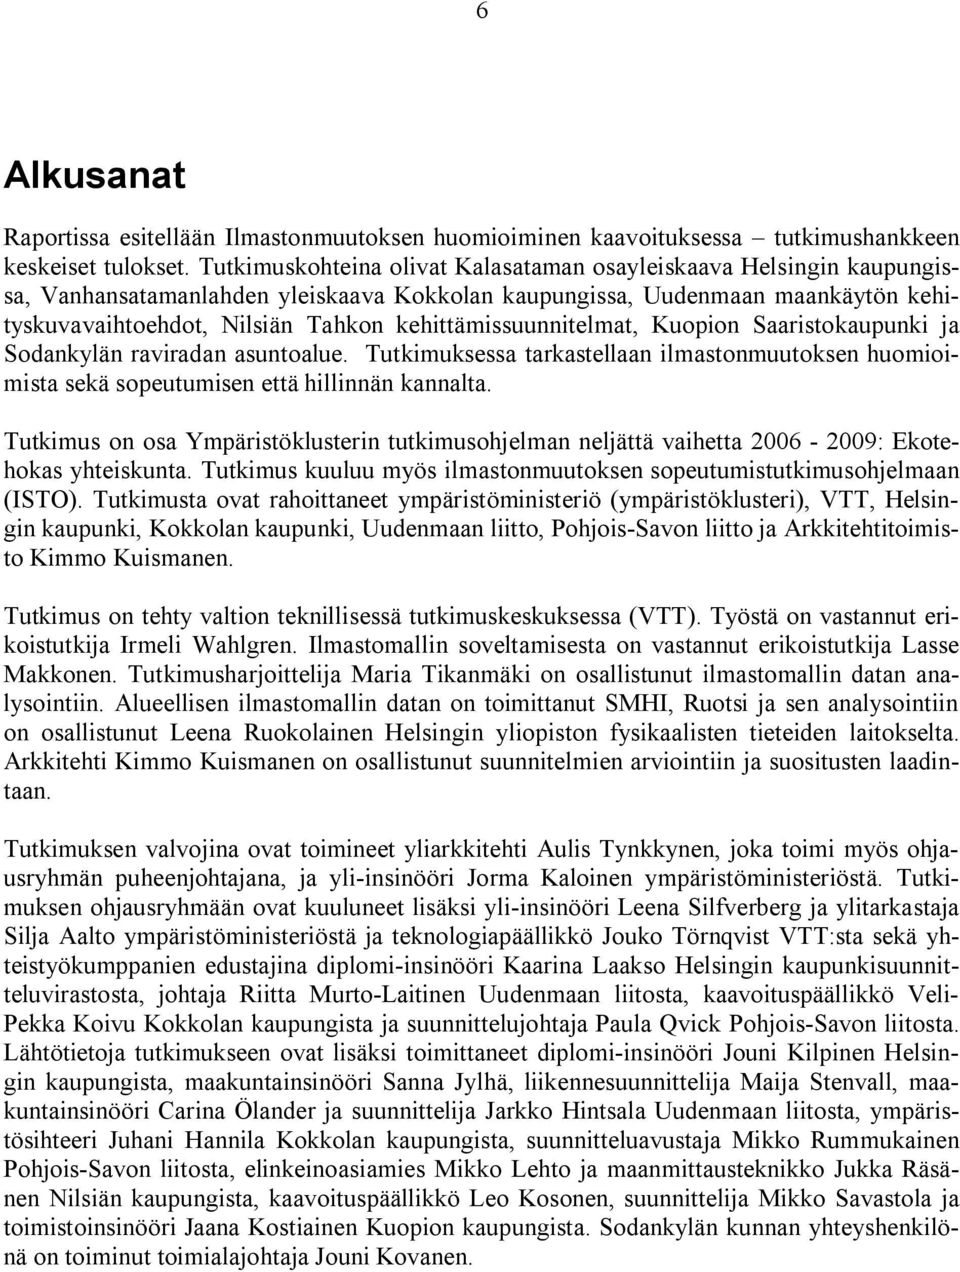 kehittämissuunnitelmat, Kuopion Saaristokaupunki ja Sodankylän raviradan asuntoalue. Tutkimuksessa tarkastellaan ilmastonmuutoksen huomioimista sekä sopeutumisen että hillinnän kannalta.